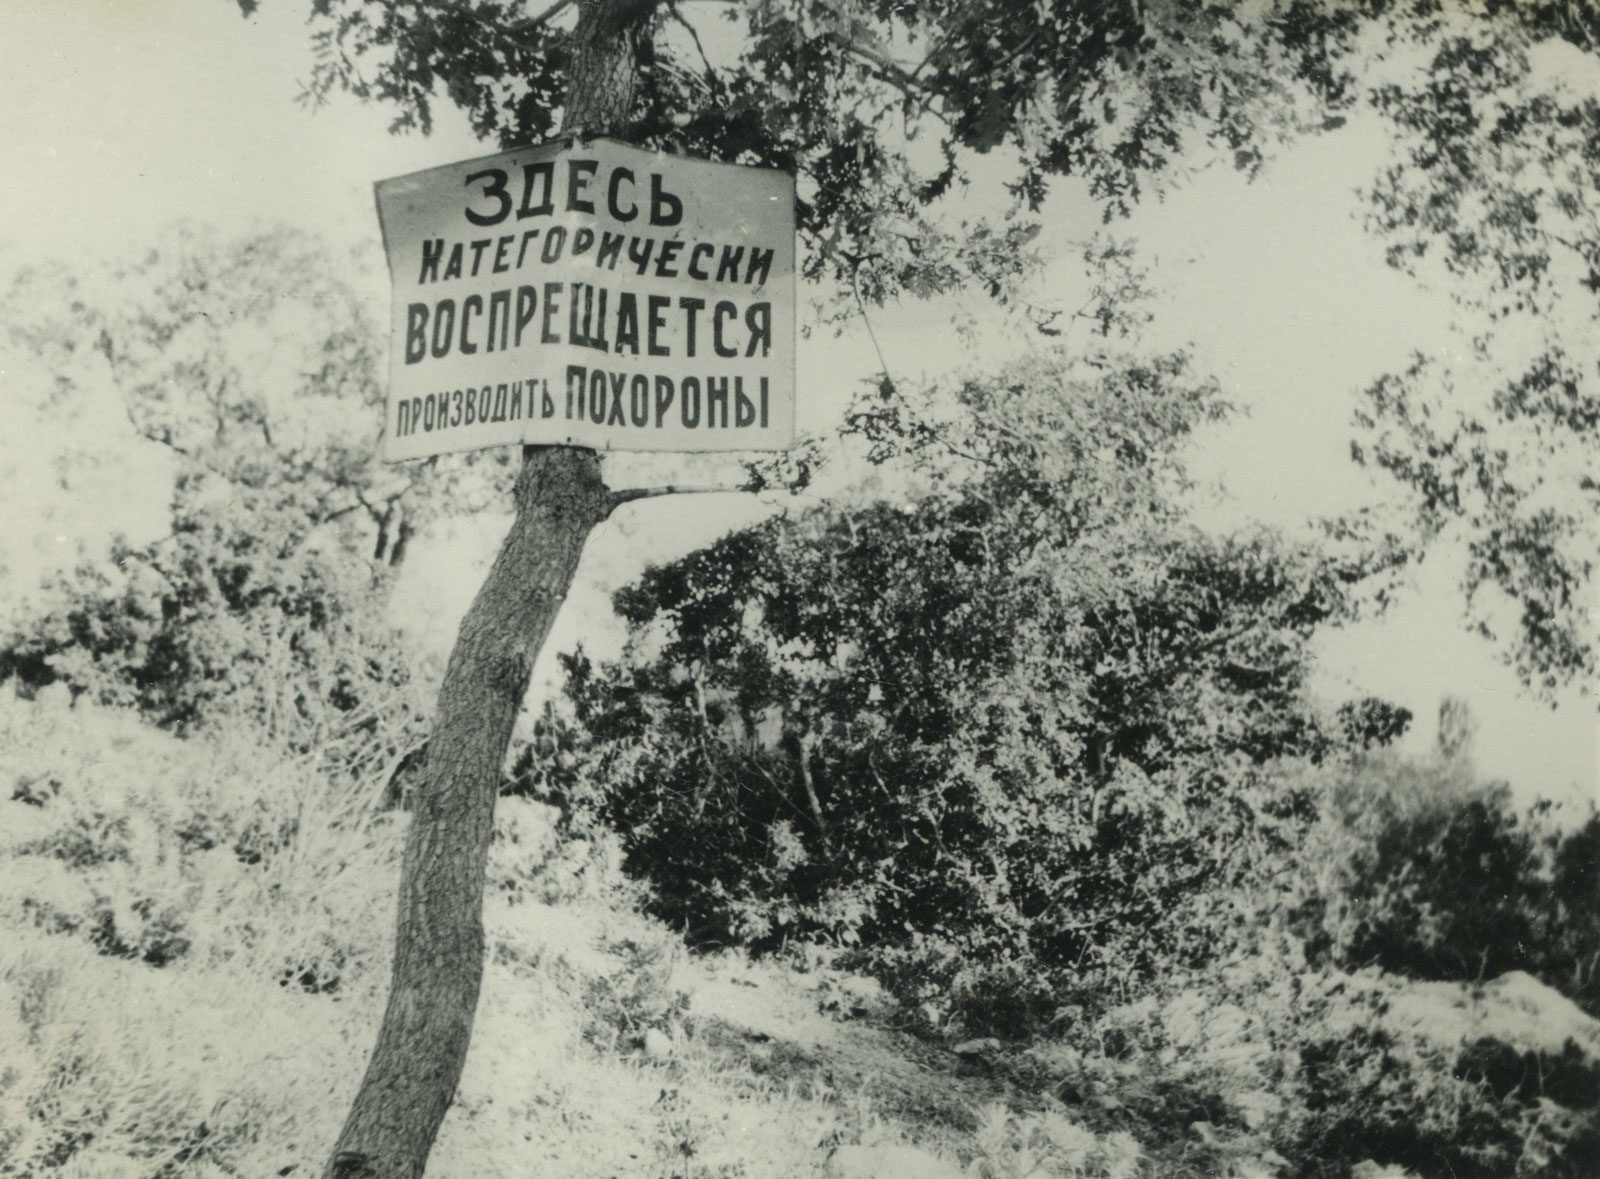 Оголошення на околицях Харкова. 1933 р.  Фото: Wikimedia Commons / ЦДКФФА України імені Гордія Пшеничного